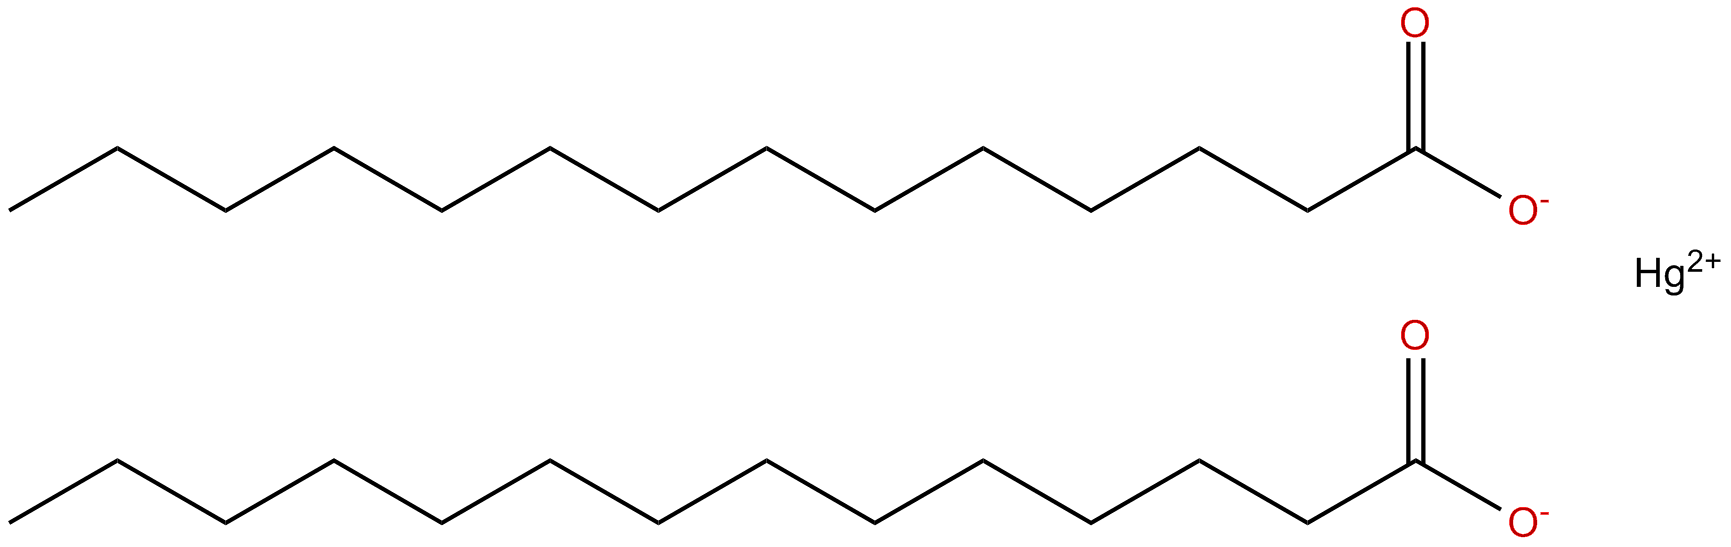 Image of mercury(II) tetradecanoate